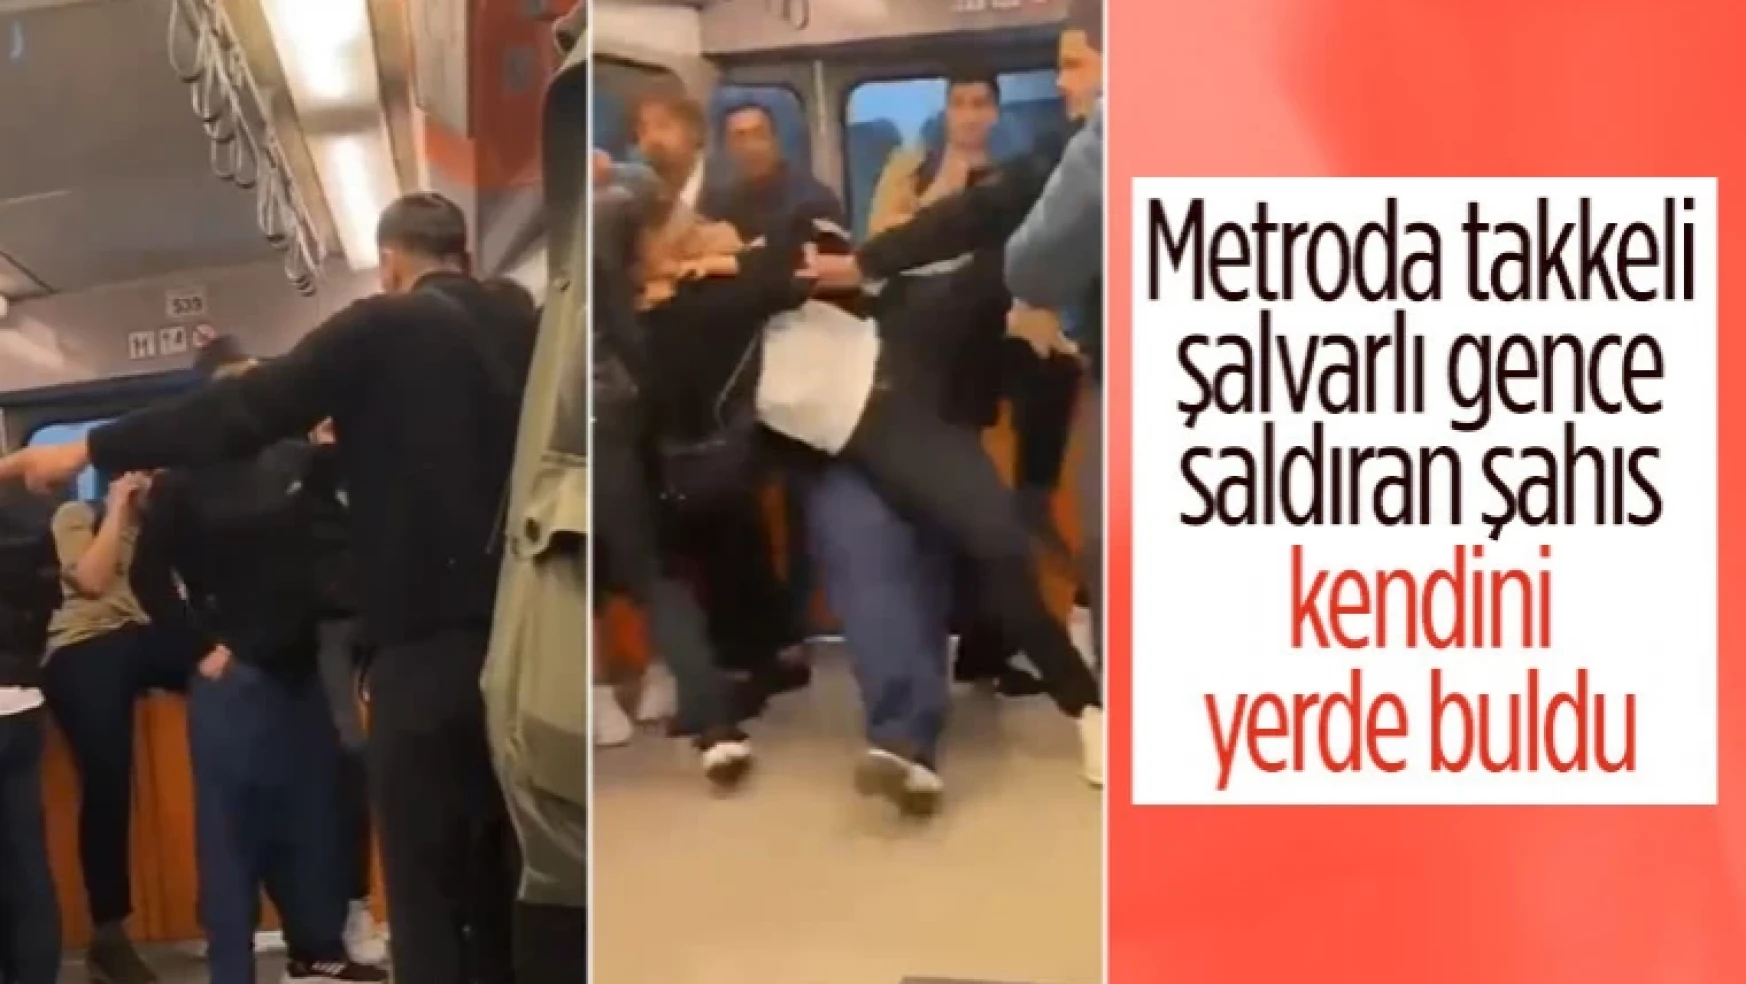 Metroda takkeli ve şalvarlı bir gence sözlü tacizde bulunan saldırgan kendini yerde buldu